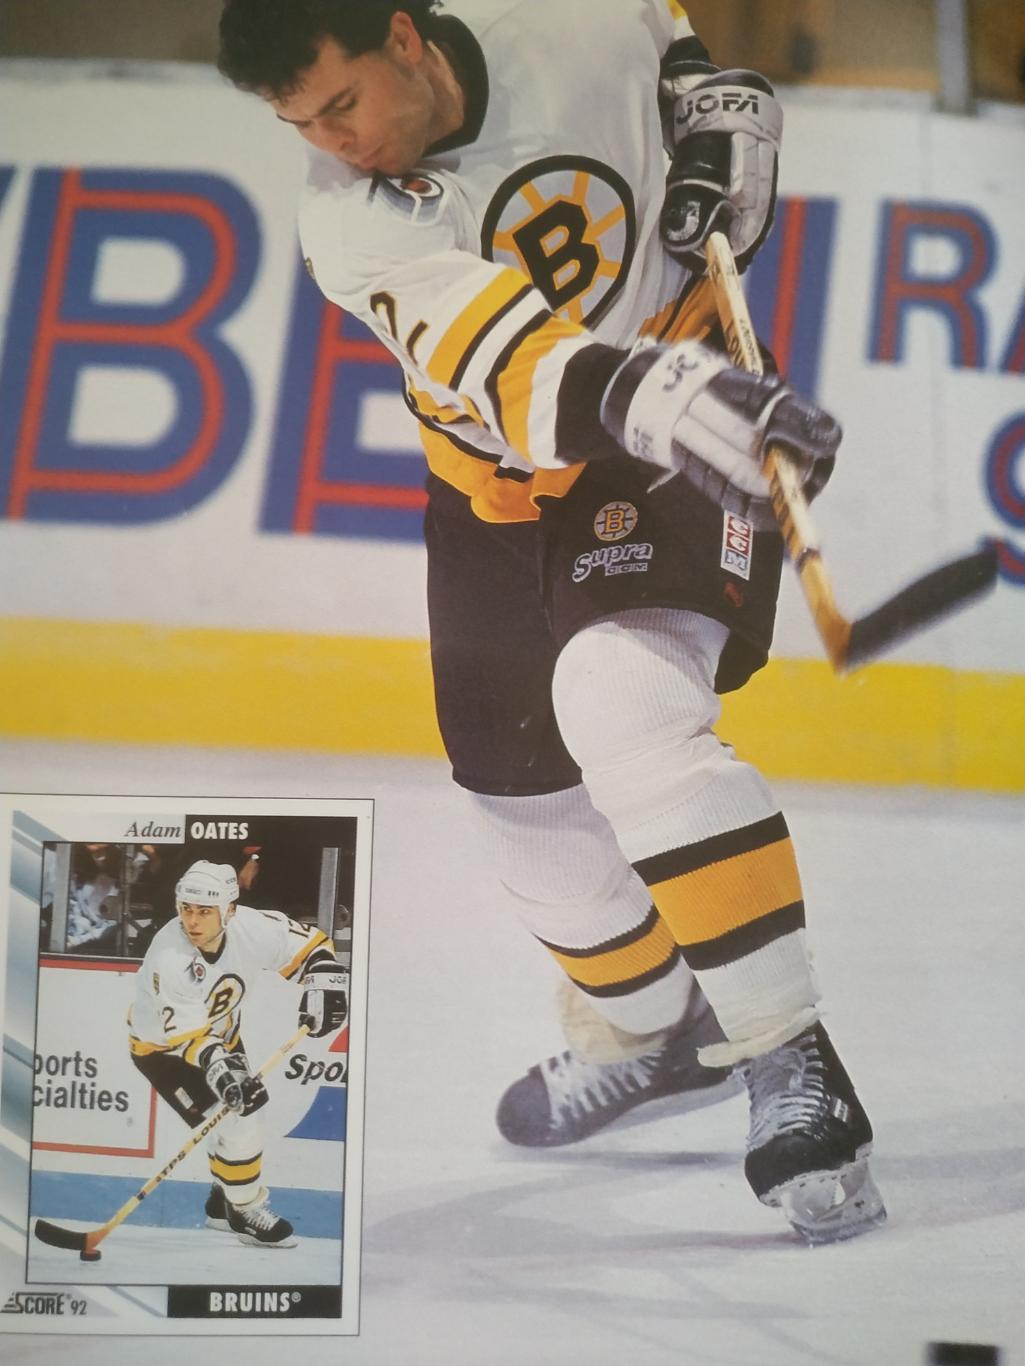 ЖУРНАЛ ЕЖЕМЕСЯЧНИК ХОККИ БЭККЕТ НХЛ NHL 1992 OCT BECKETT HOCKEY MAGAZINE #24 7